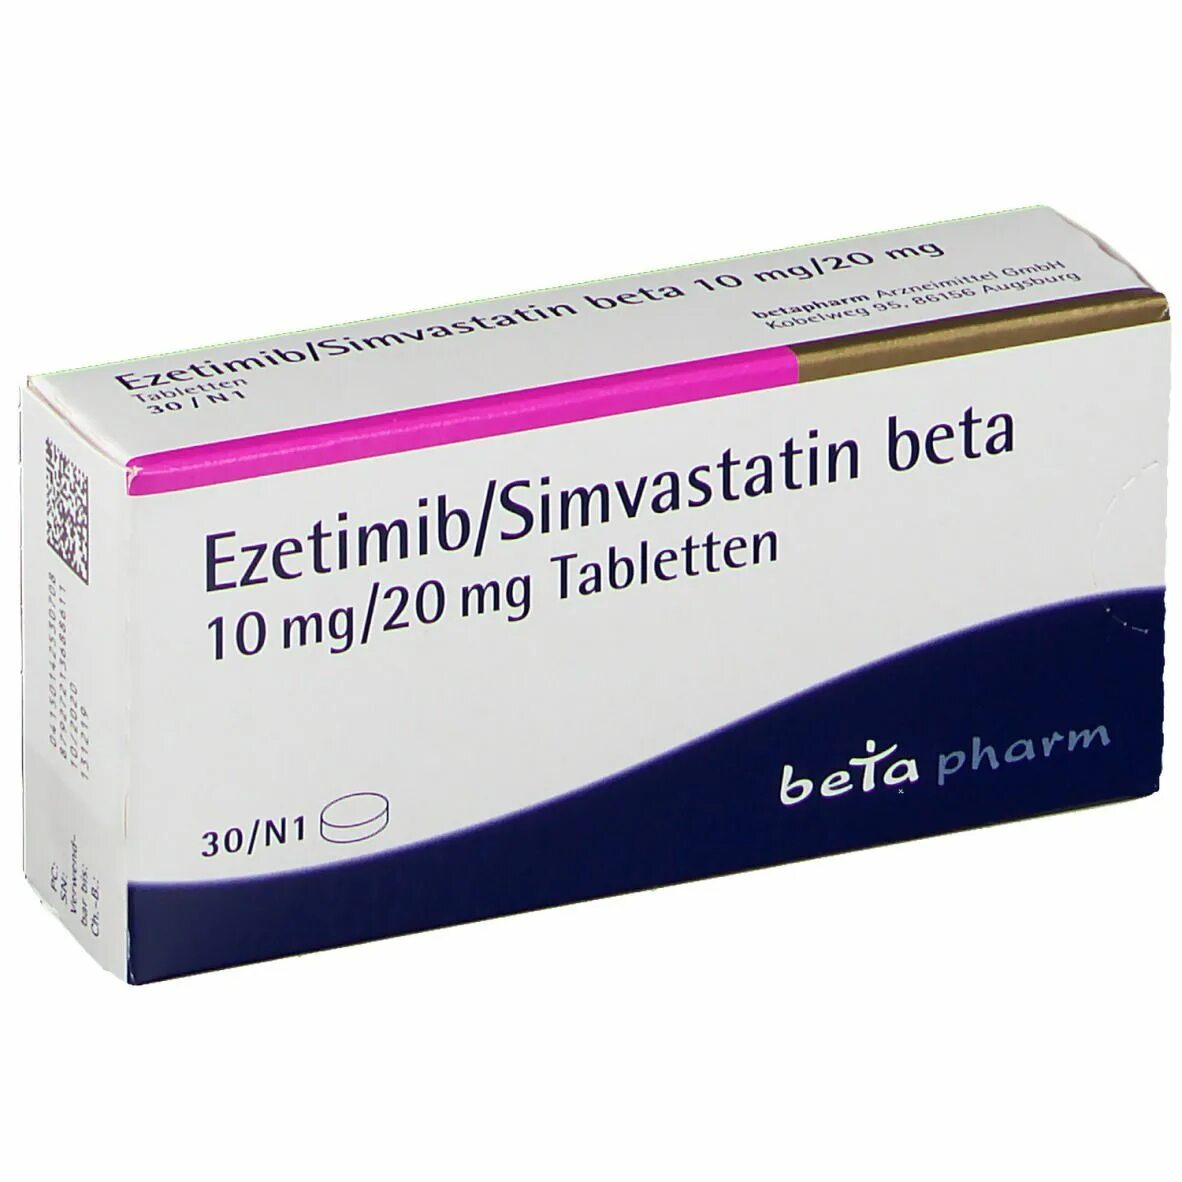 Симвастатин 10 аналоги. Эзетимиб 10 мг. Эзетимиб 10 аналоги. Симвастатин эзетимиб. Статин эзетимиб.